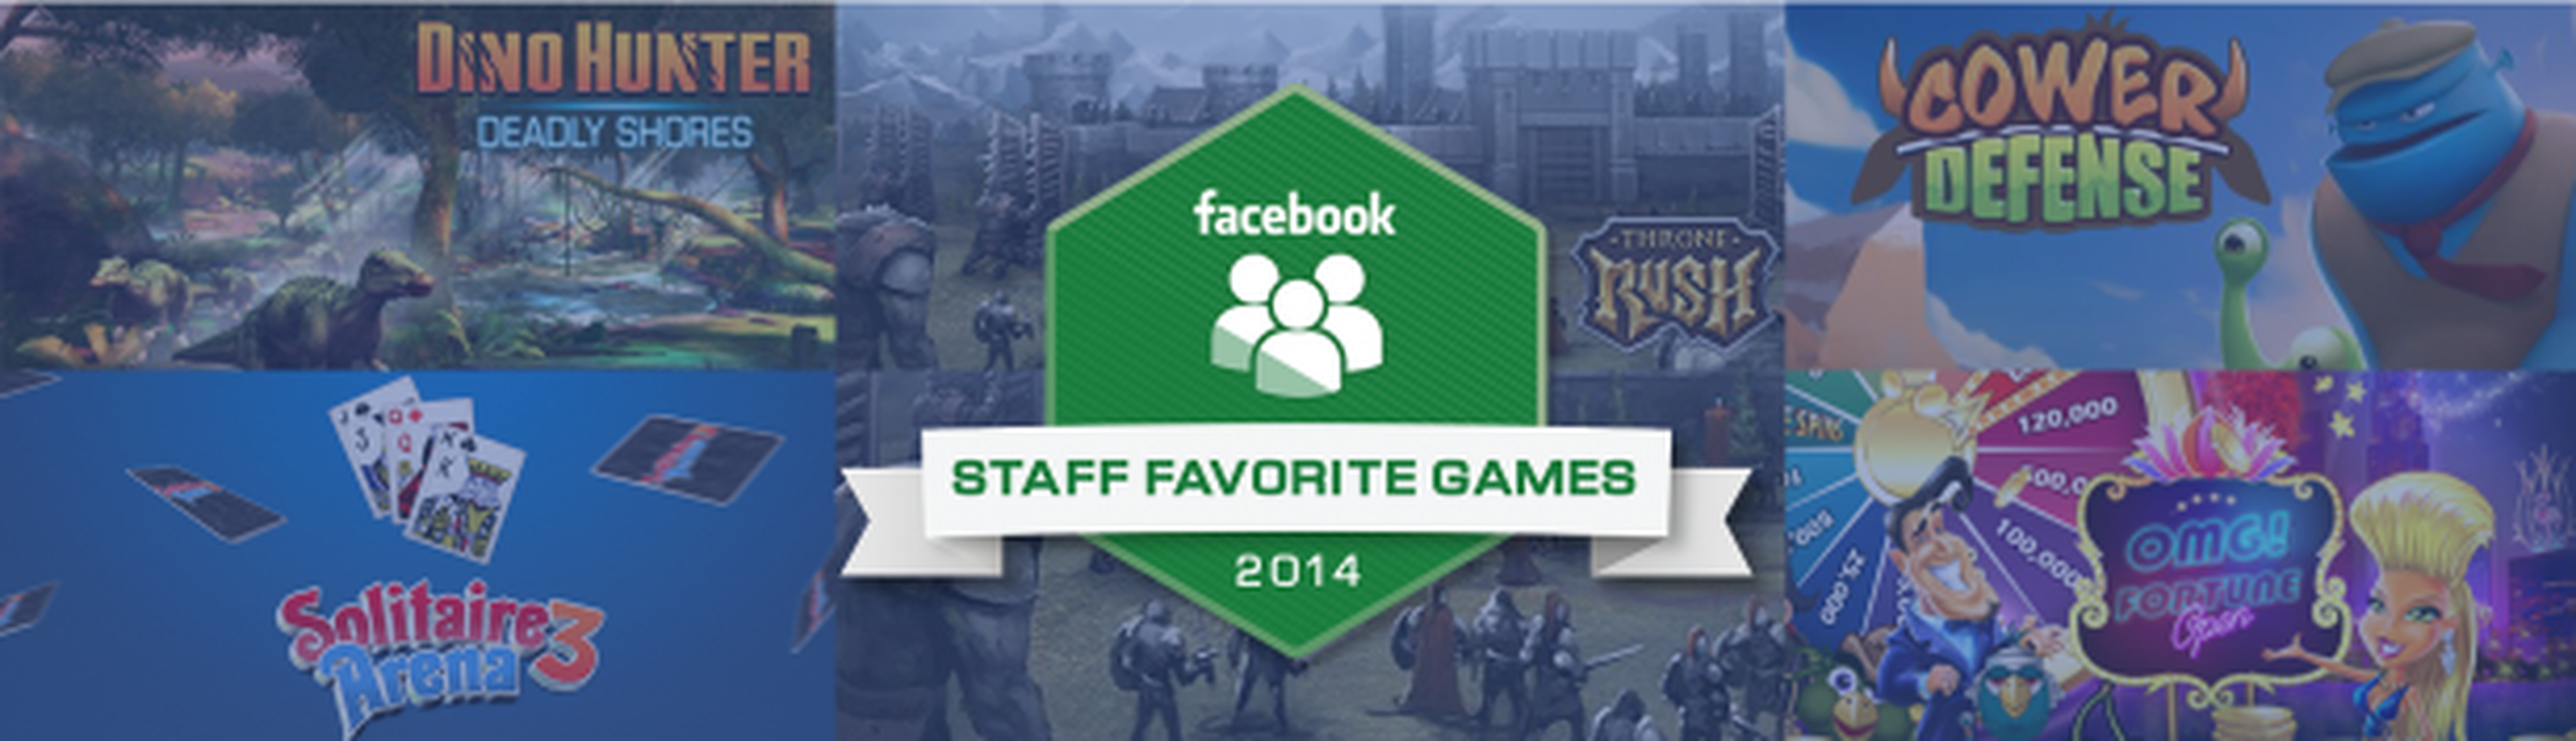 Los mejores juegos de 2014 en Facebook